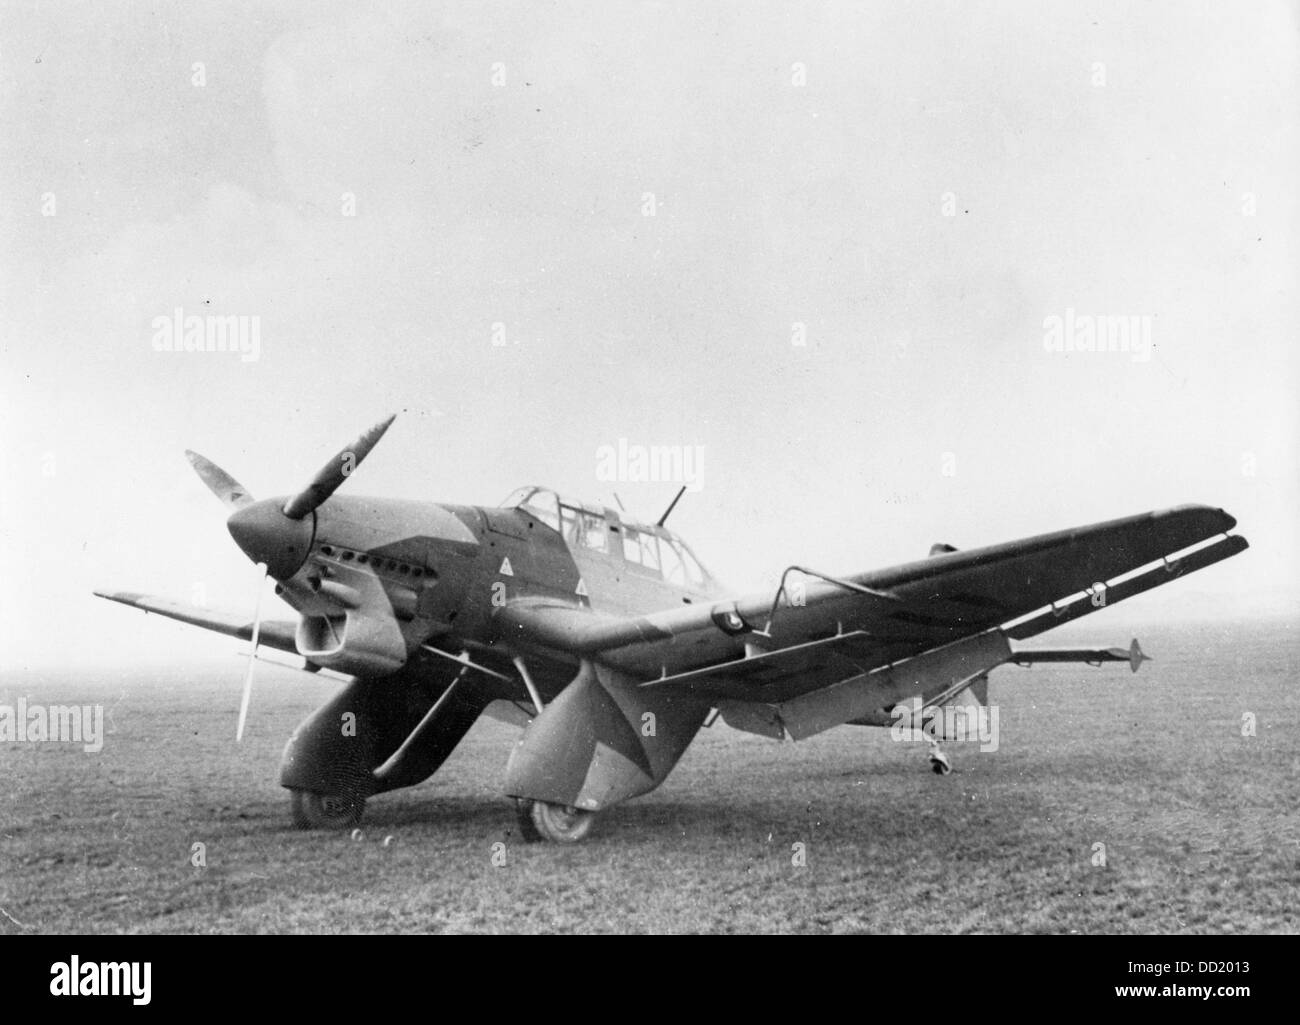 Die Sturzkampfbomber Junkers Ju 87 führt eine Mission für die deutsche Wehrmacht im März 1938. Der NS-Propaganda! auf der Rückseite des Bildes ist datiert 9. März 1938: "Sturzkampfbomber Junkers Ju 87. Die deutsche Luftwaffe verwendet man-Motor, Zweimann-Sturzkampfbomber Junkers Ju 87. Das Flugzeug ist mit zwei Maschinengewehren ausgestattet und kann eine Bombe Last von 250 bis 500 Kilogramm tragen. Als Sturzkampfbomber hat das Flugzeug eine Tauch-Bremse, die begrenzt die Tauchen Geschwindigkeit und ermöglicht es, nahe an das Ziel, die Entlastung der Crew vom Leiden von anziehenden Kräfte bekommen. Der Motor ist ein Junkers-Flugmotor "Juno 210" mit Stockfoto